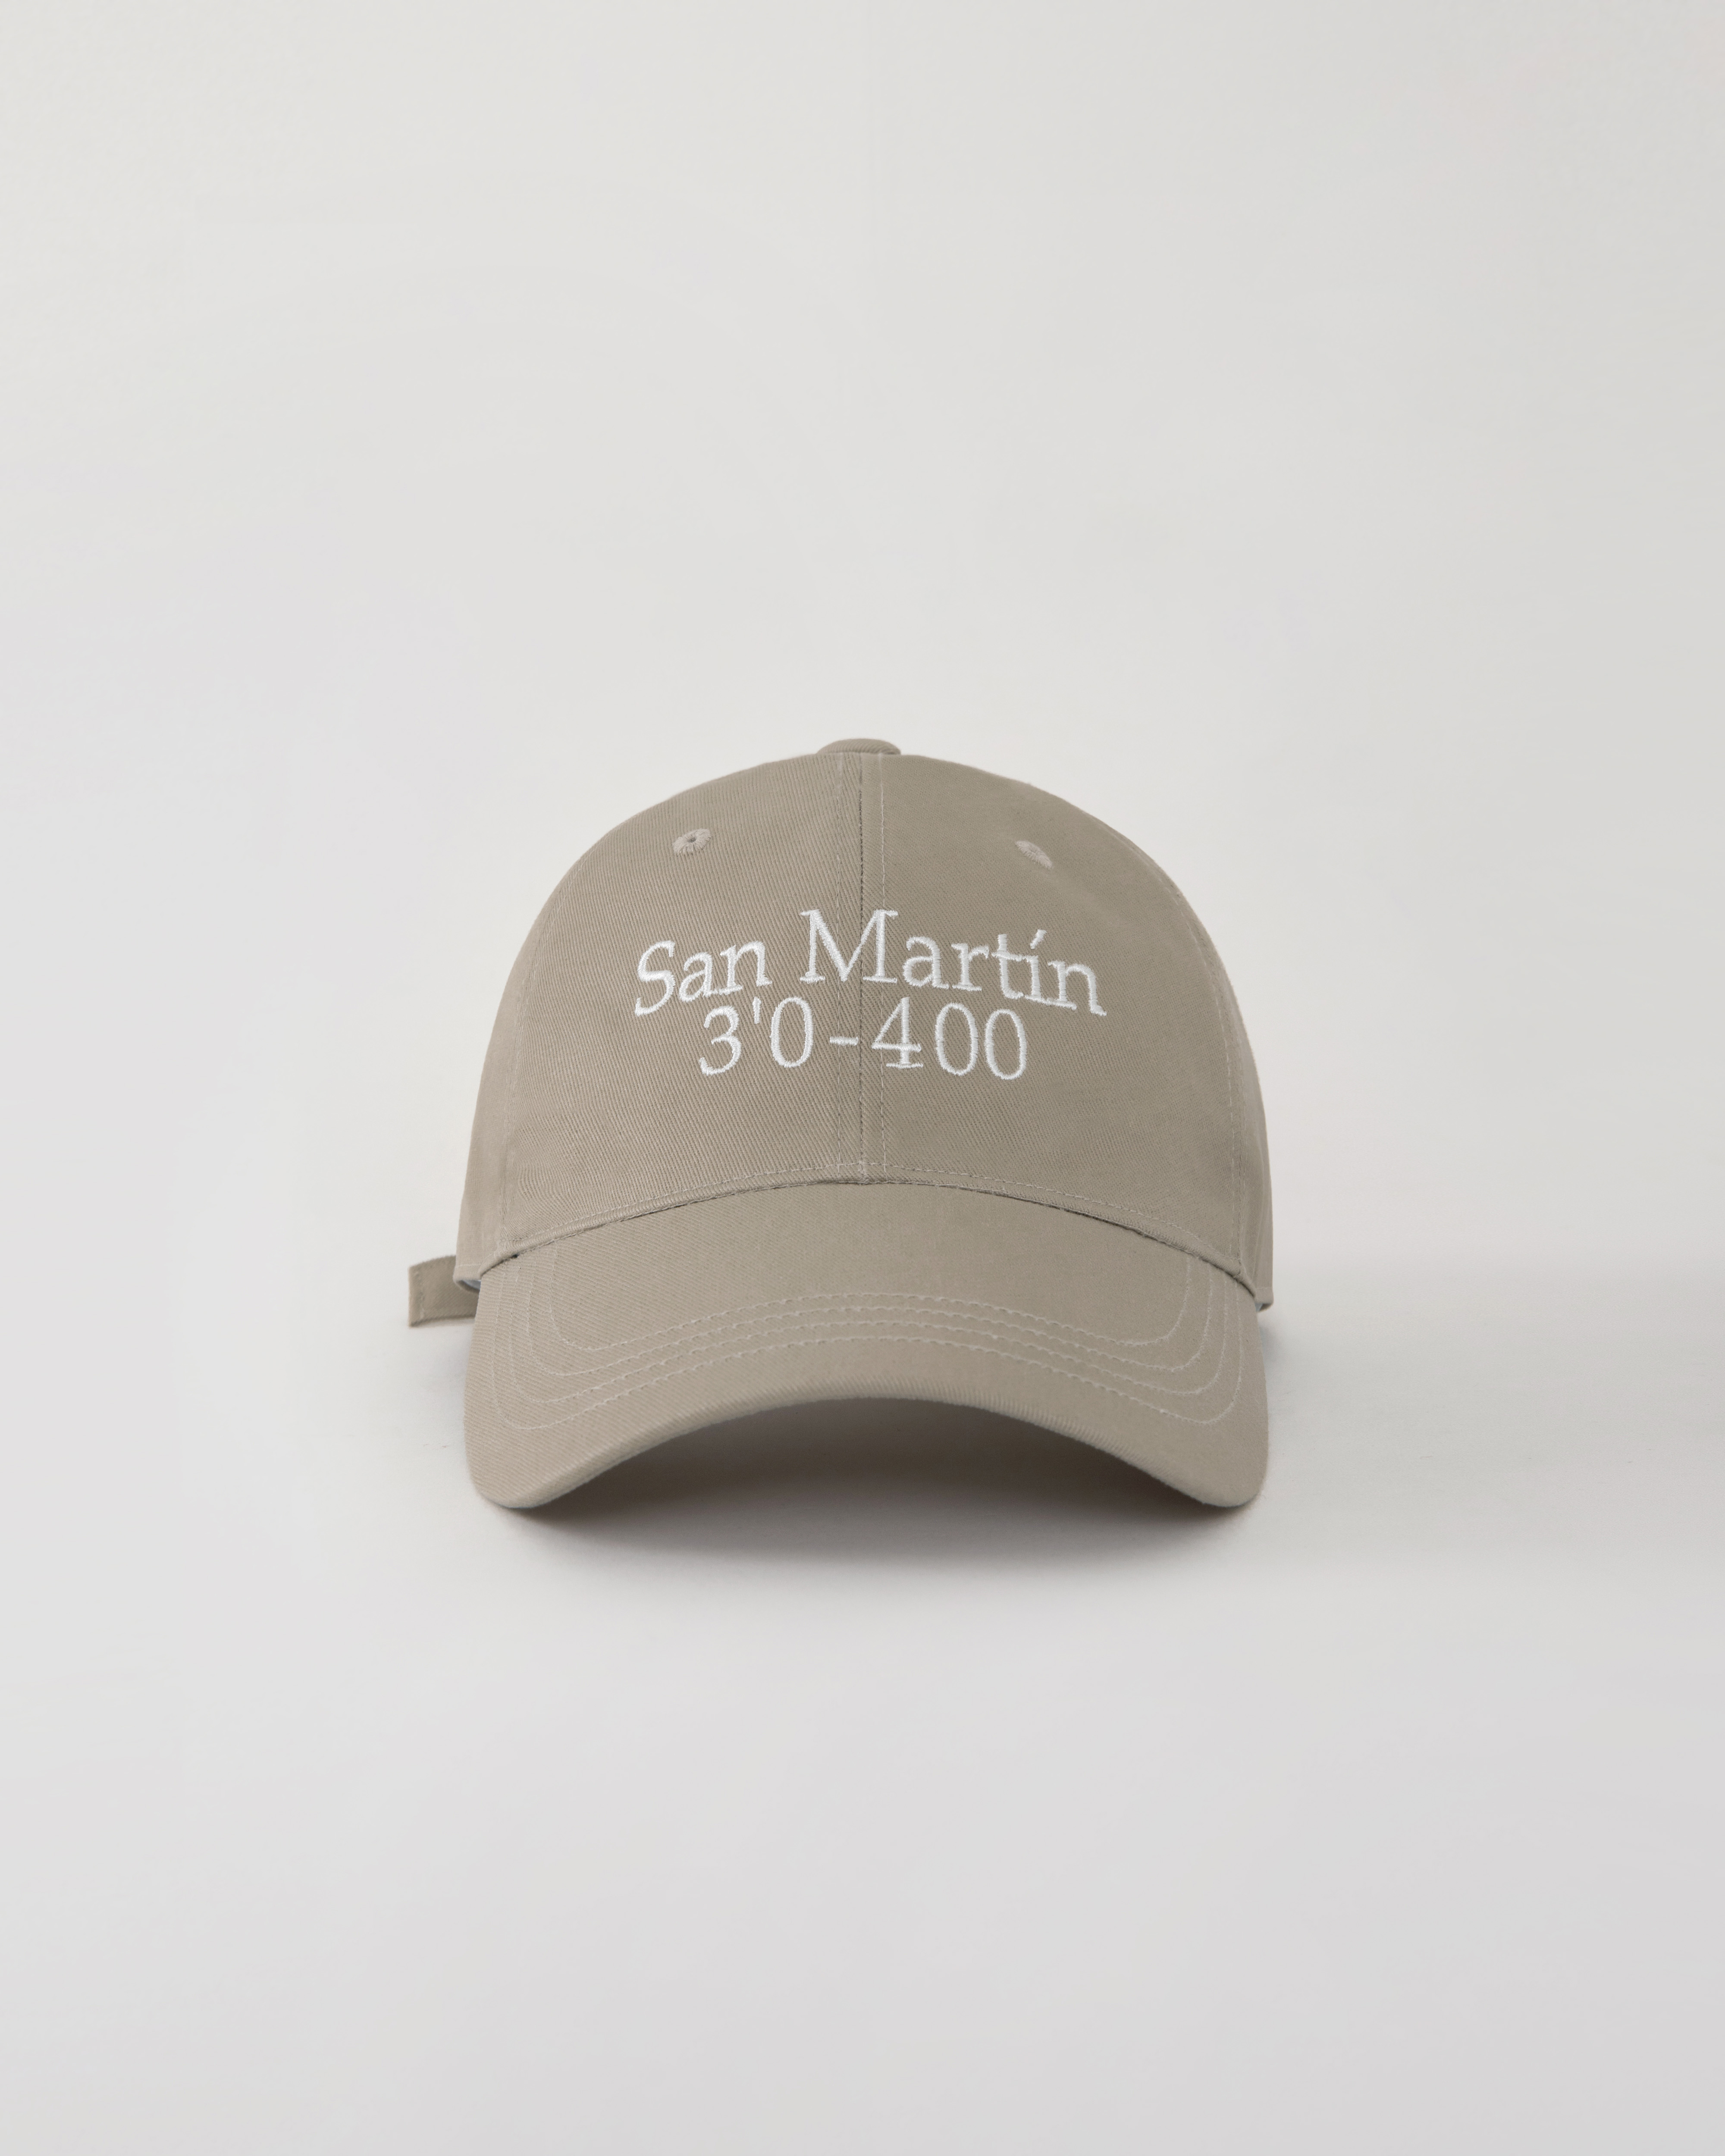 4/26 15:00 발매예정: San martin ball cap - beige